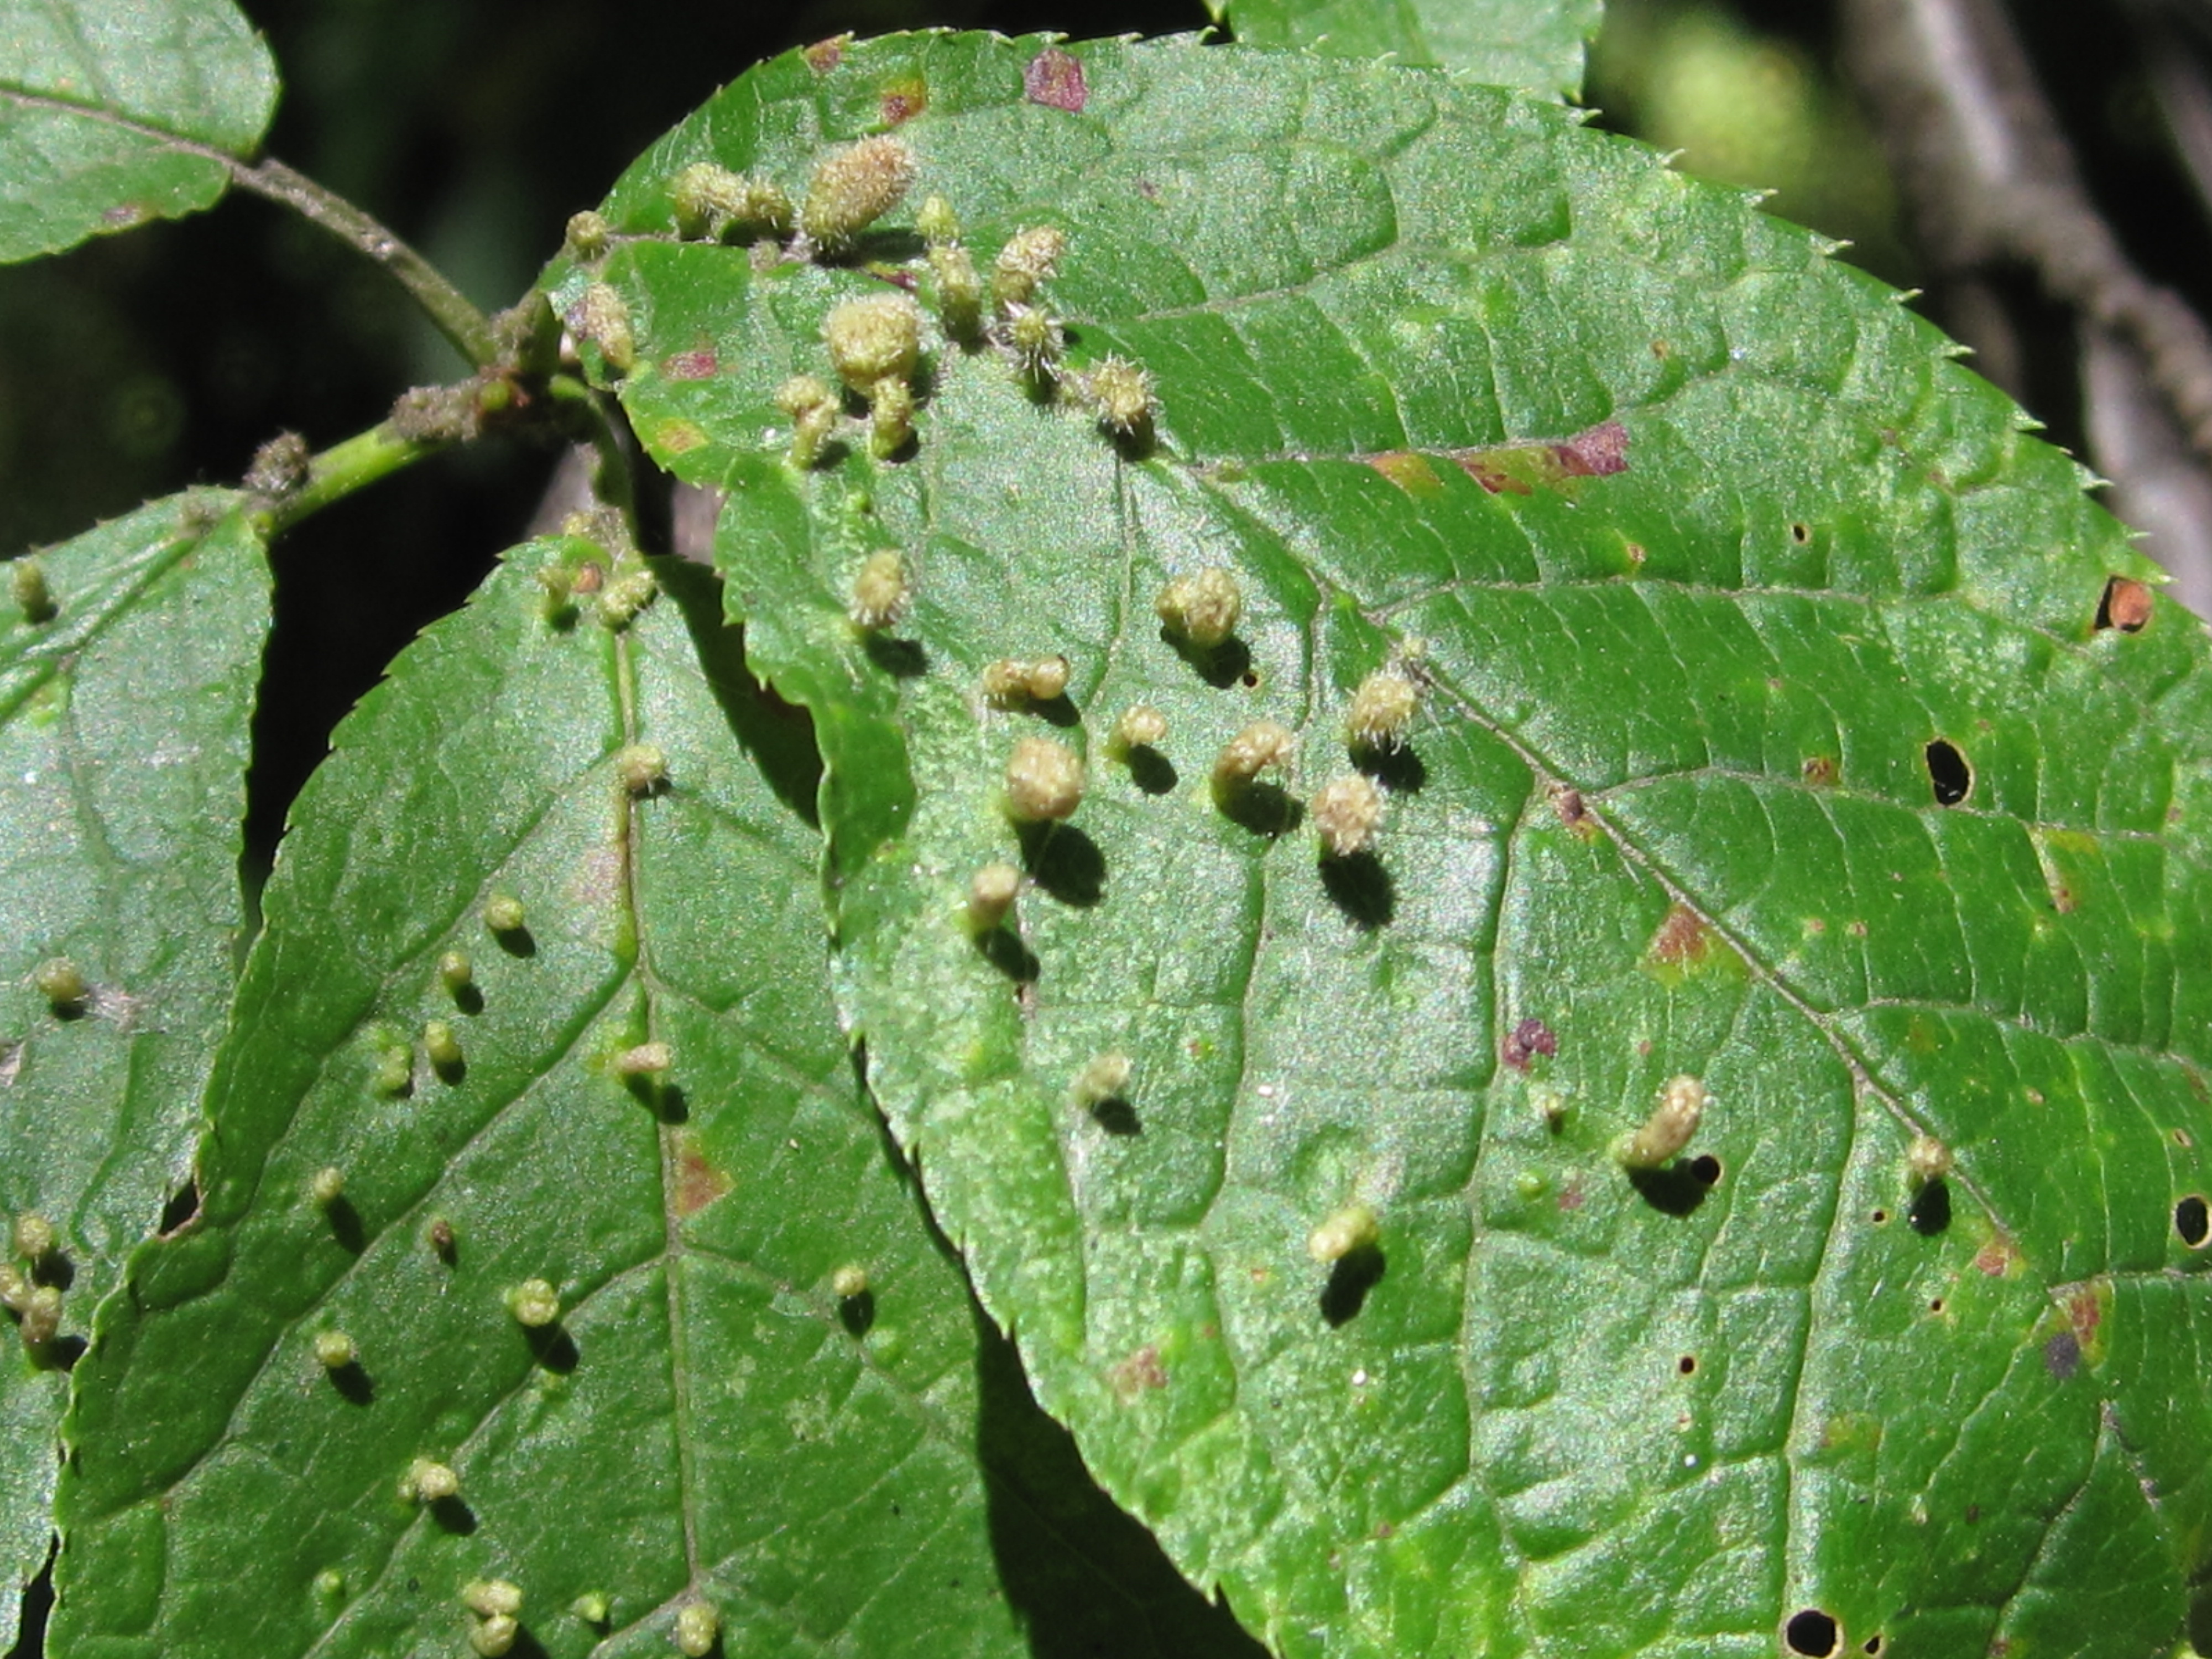 Вредители груши на листьях описание и фото